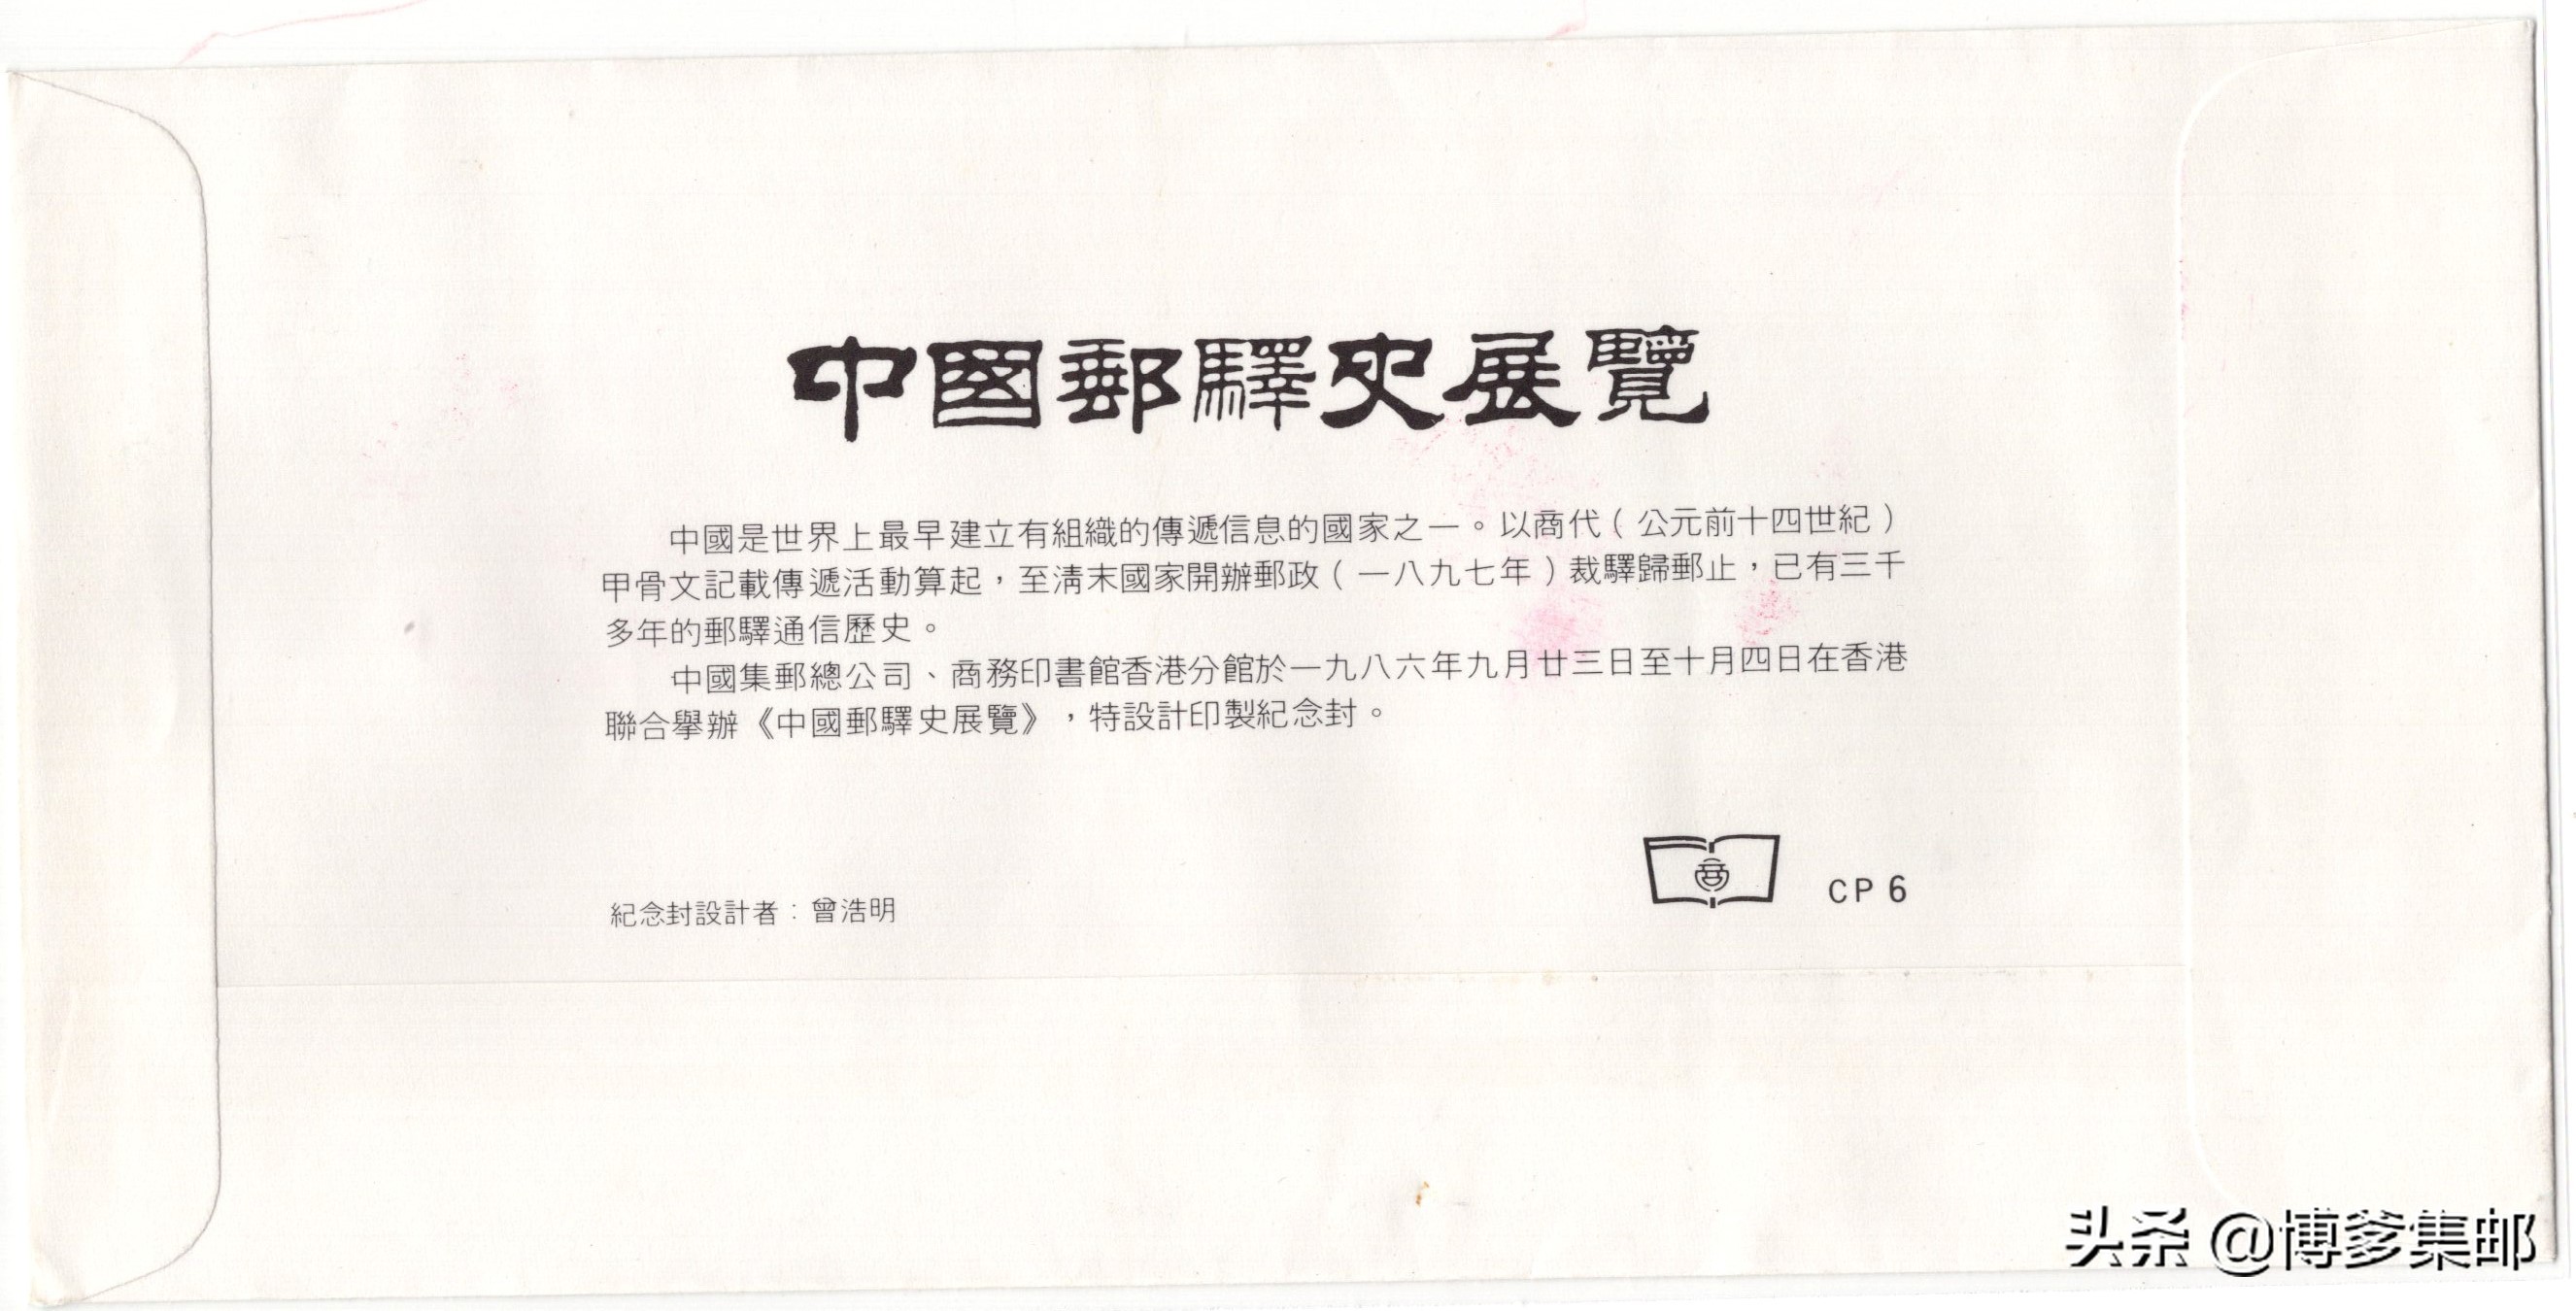 1986年中国邮驿史展览.香港